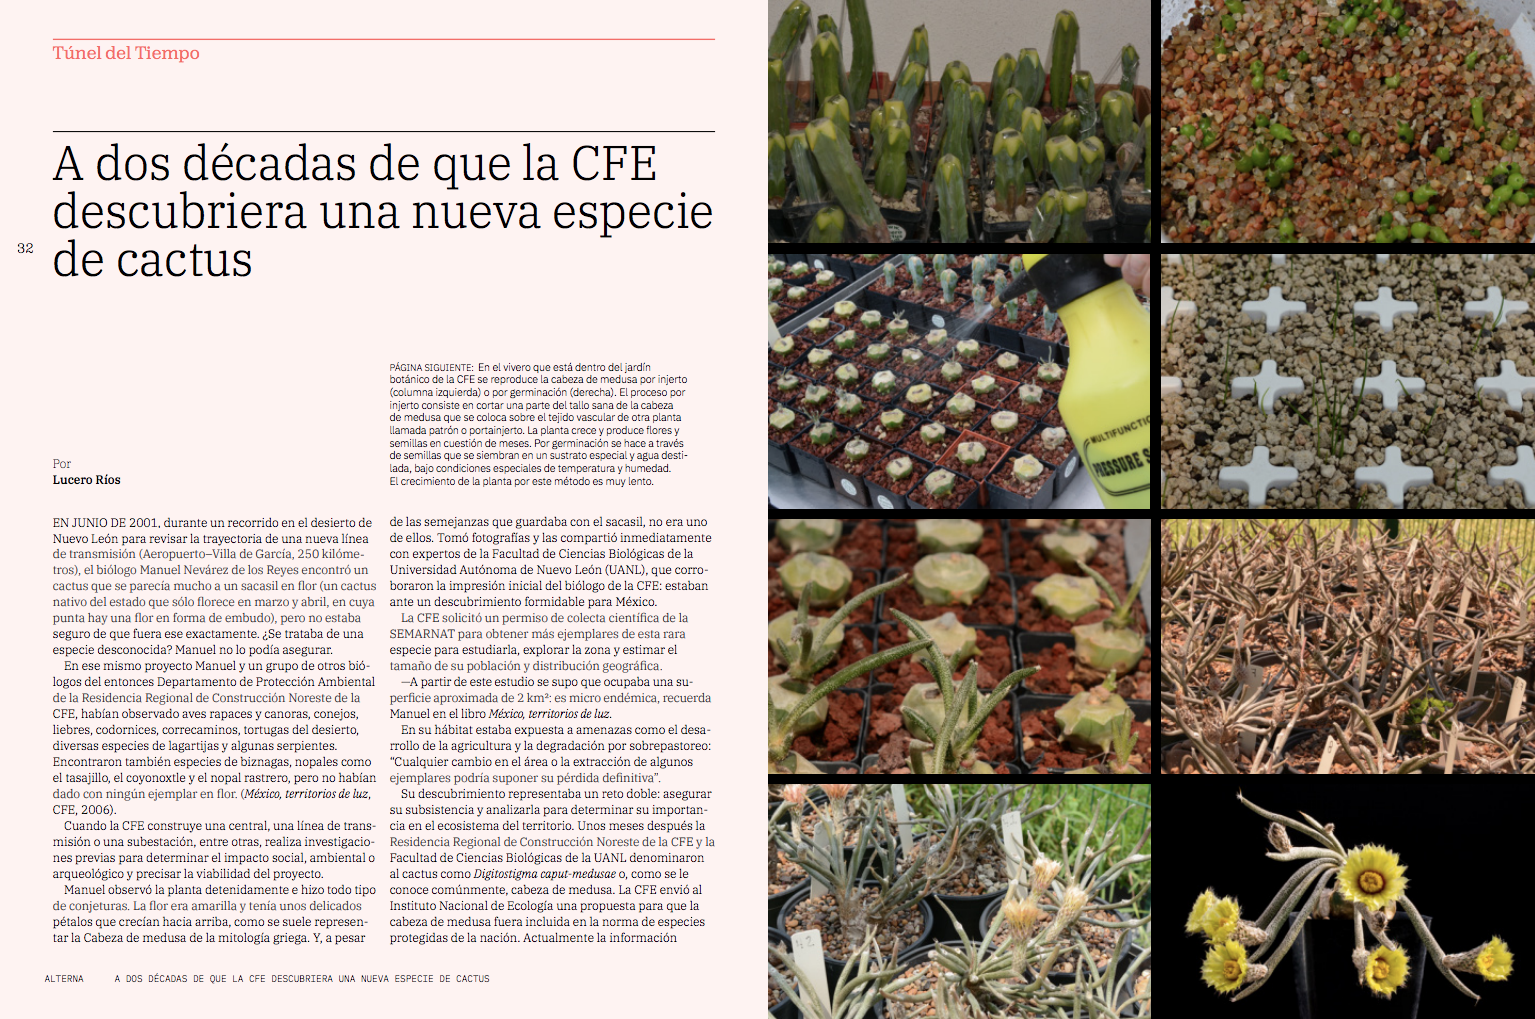 $!Hace dos décadas, un biólogo de la CFE descubrió una nueva especie de cactus en Nuevo León